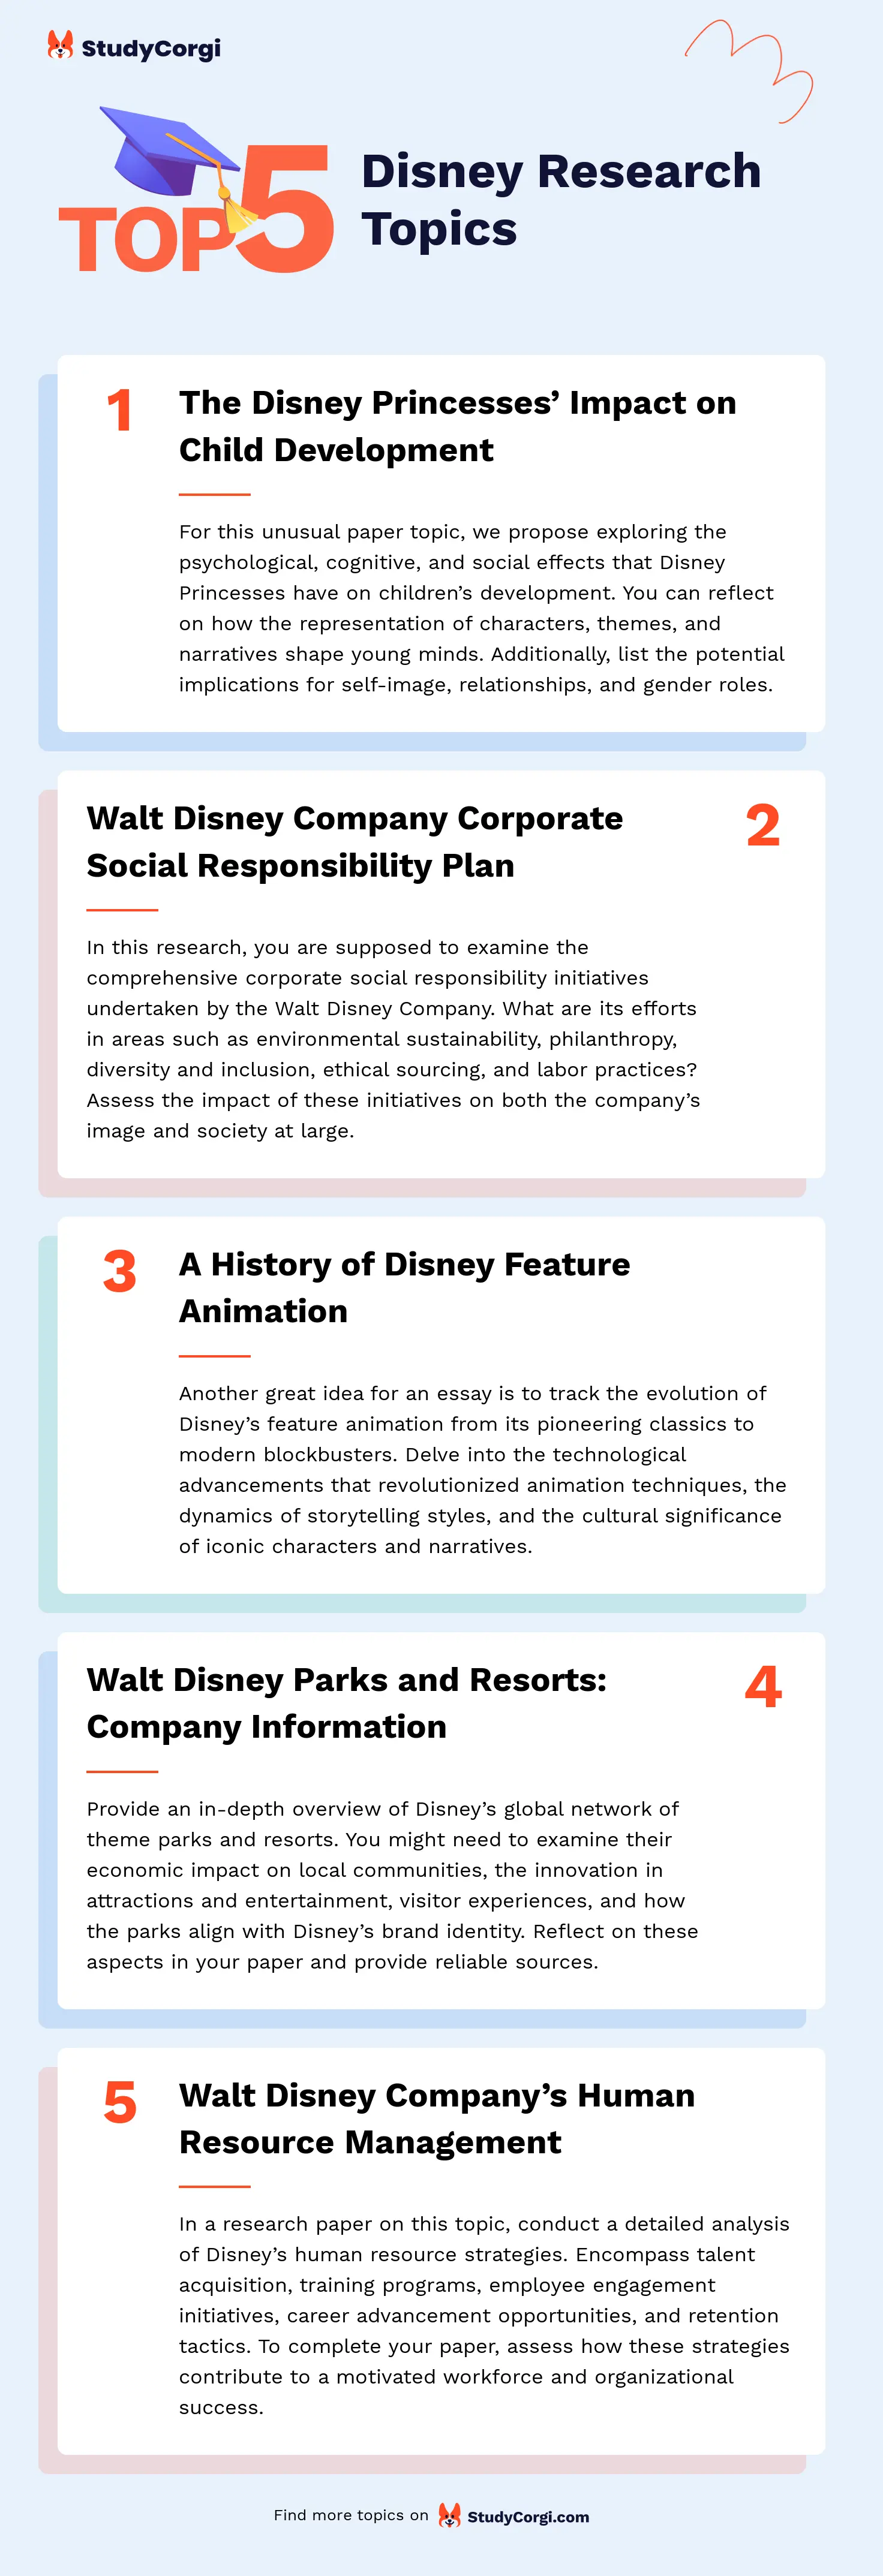 TOP-5 Disney Research Topics